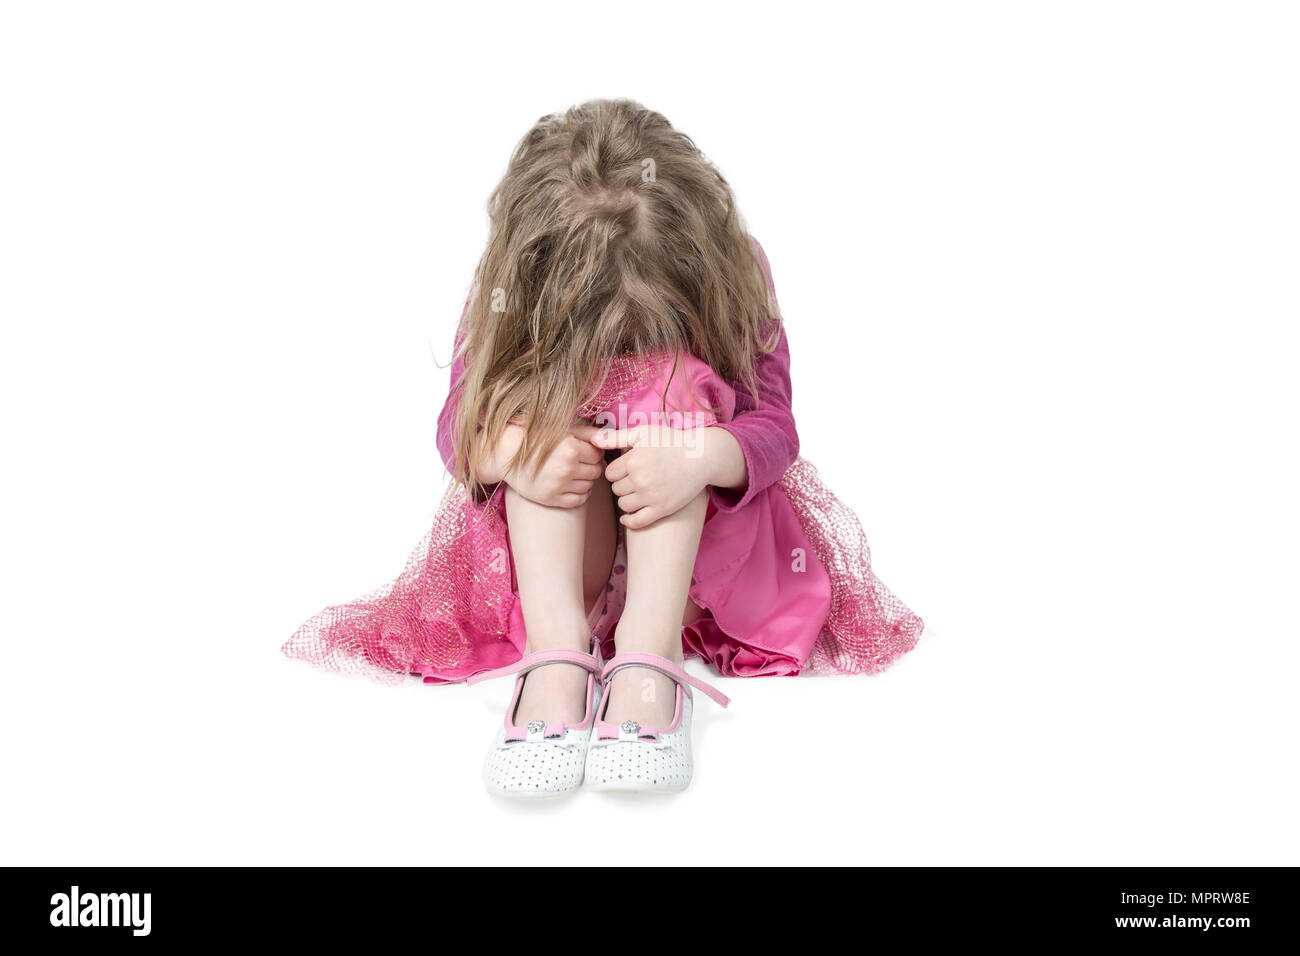 Porträt von einem weinenden Mädchen sitzen auf dem Boden, mit einem Zerzausten hairdress ihre Knie umfassen, auf weißem Hintergrund Stockfoto